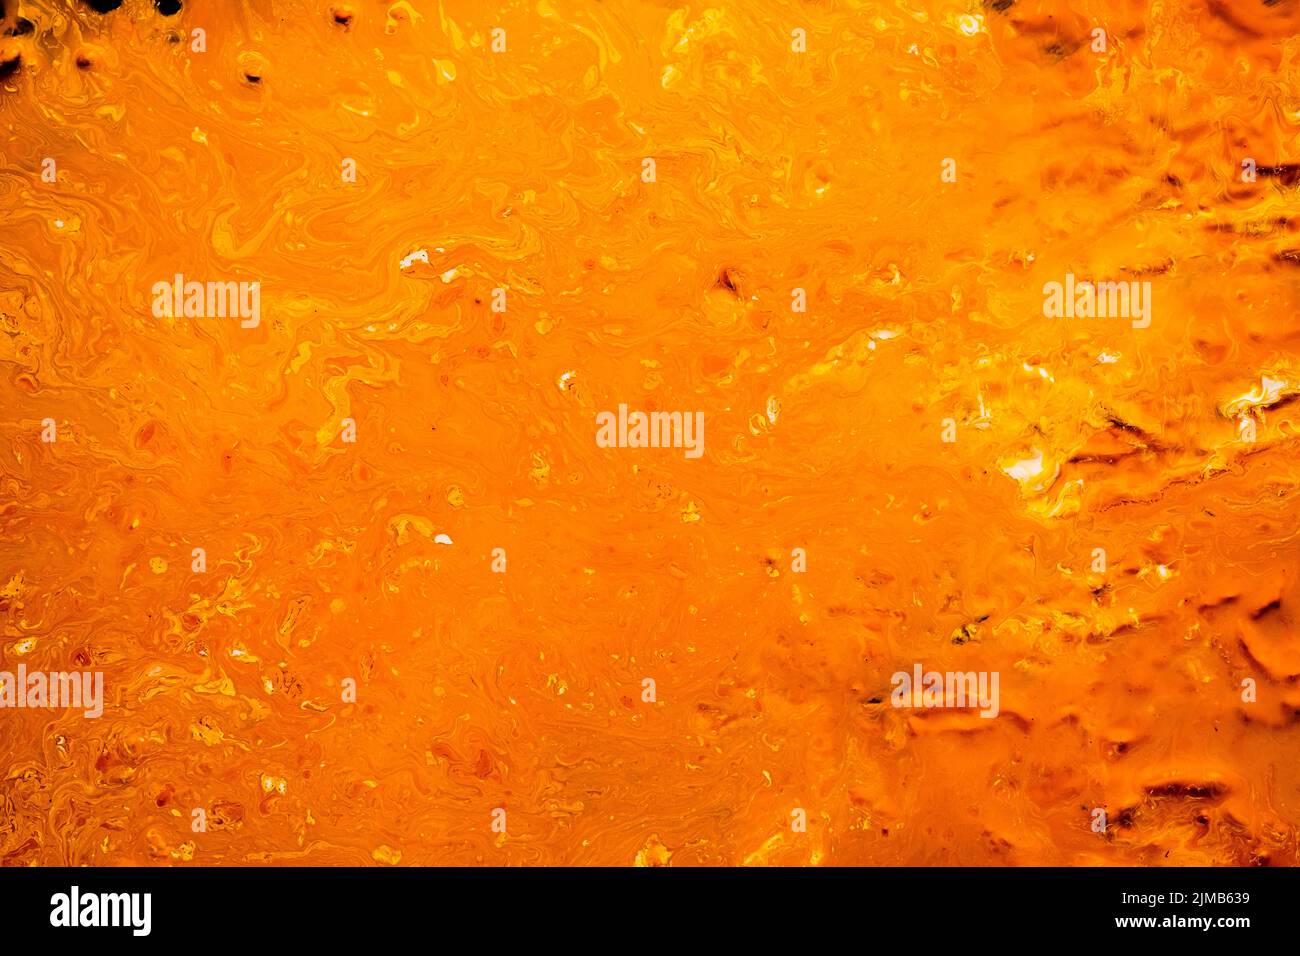 superficie lisa de fondo de pintura naranja abstracta Foto de stock